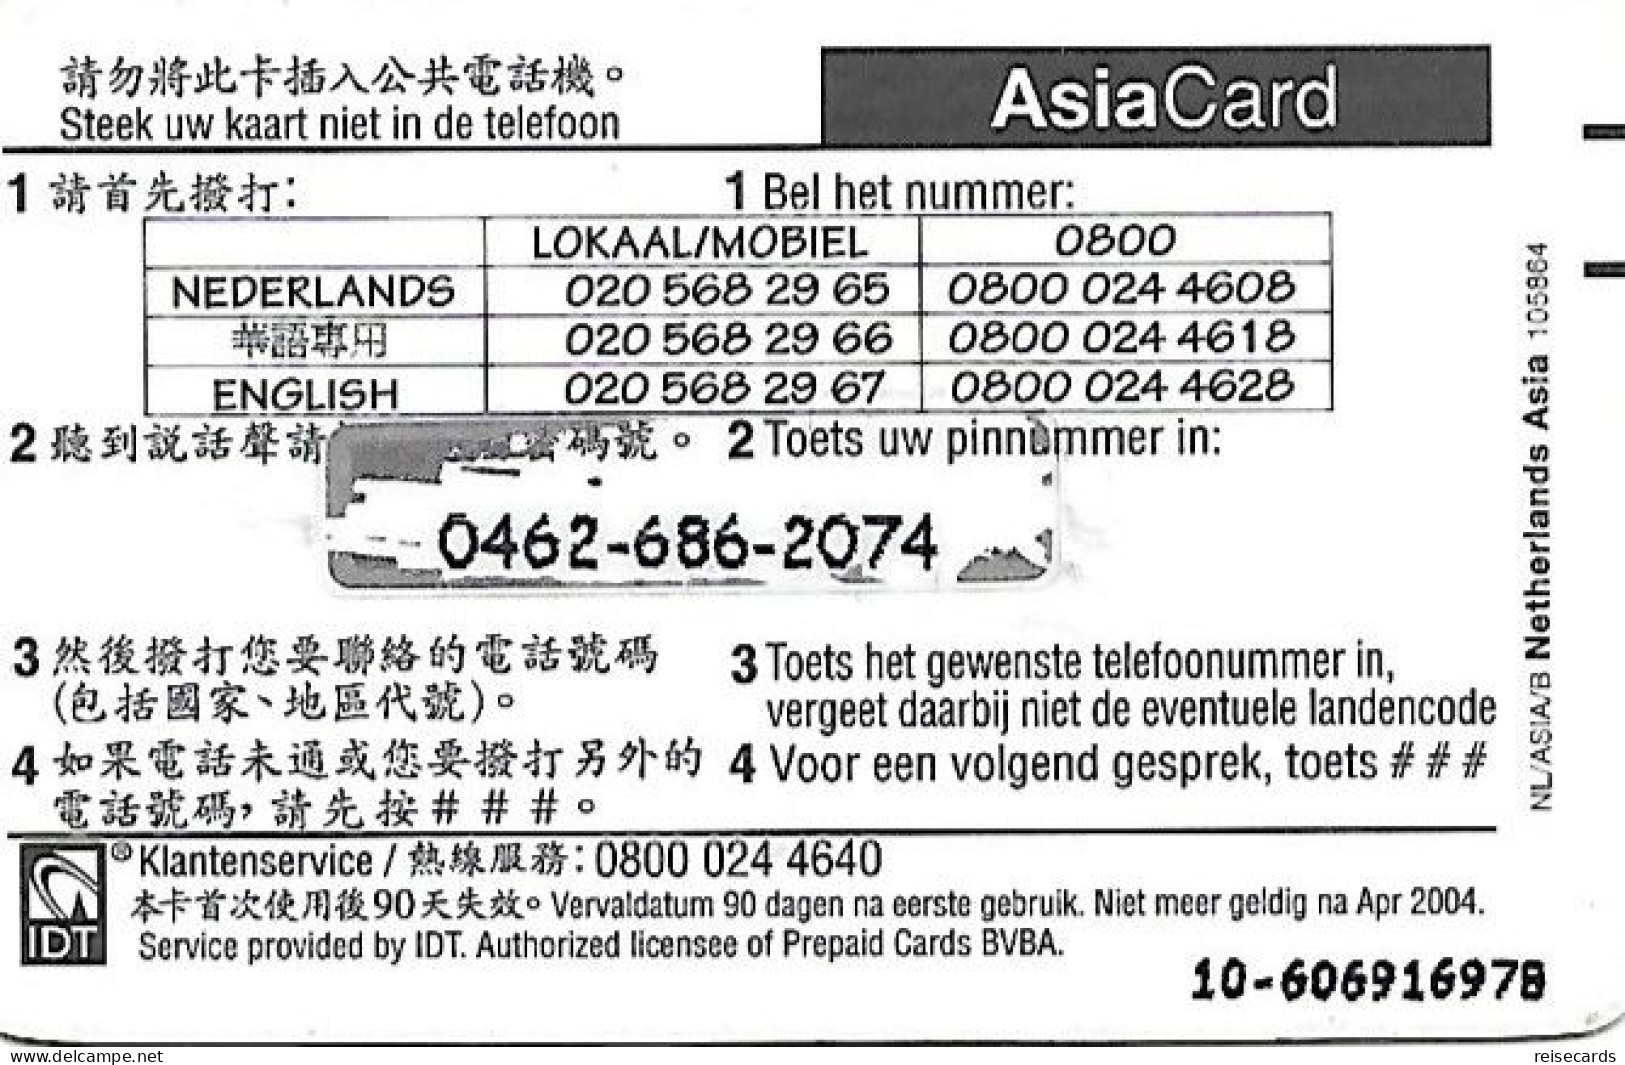 Netherlands: Prepaid IDT - Asia Card 04.04 - GSM-Kaarten, Bijvulling & Vooraf Betaalde